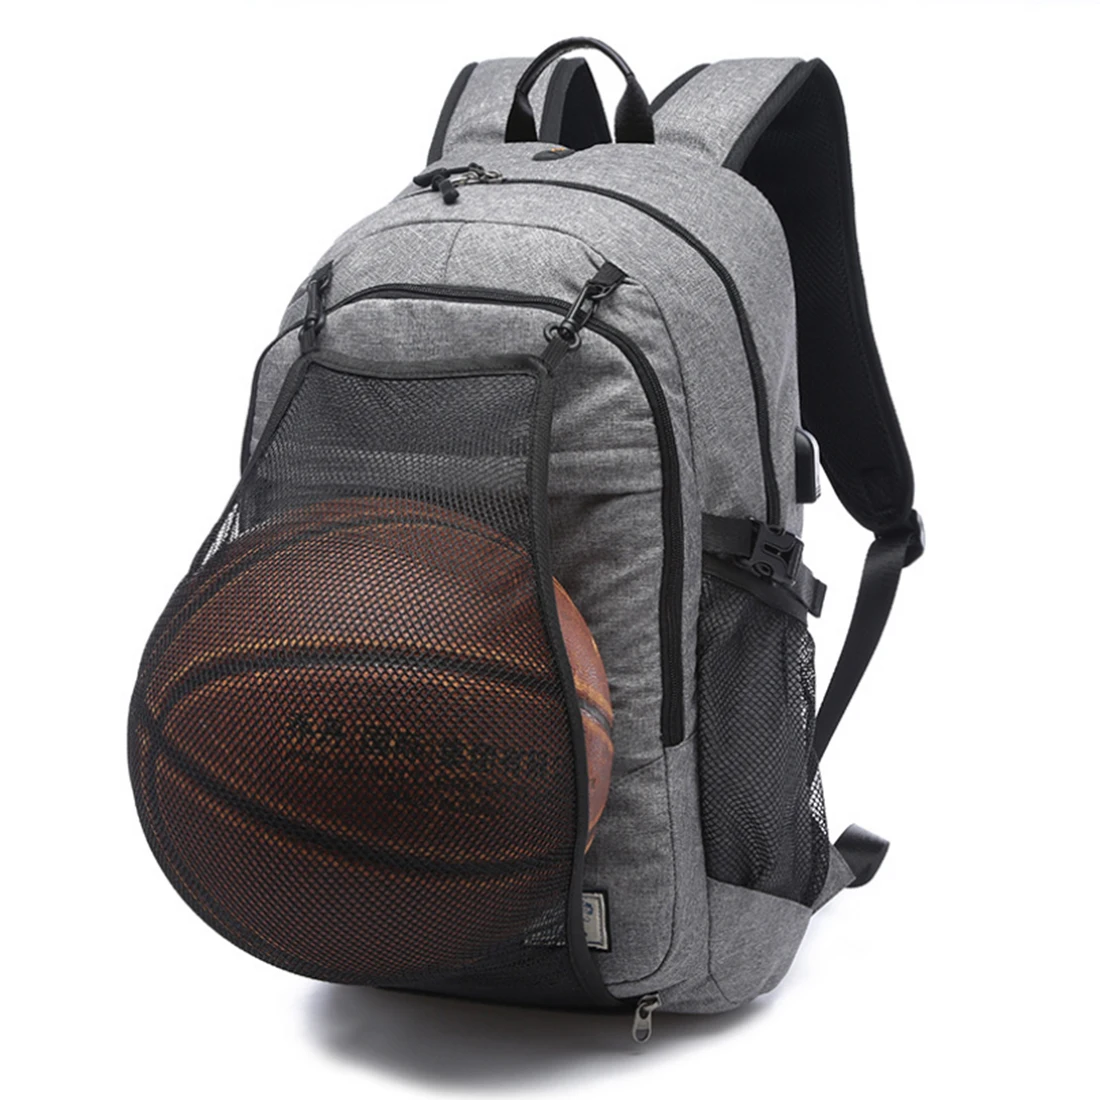 Многофункциональный баскетбольный рюкзак для мужчин с портом S, спортивная сумка, 15,6 дюймовый ноутбук с баскетбольной сеткой, usb порт для зарядки, мужская сумка - Цвет: Светло-серый